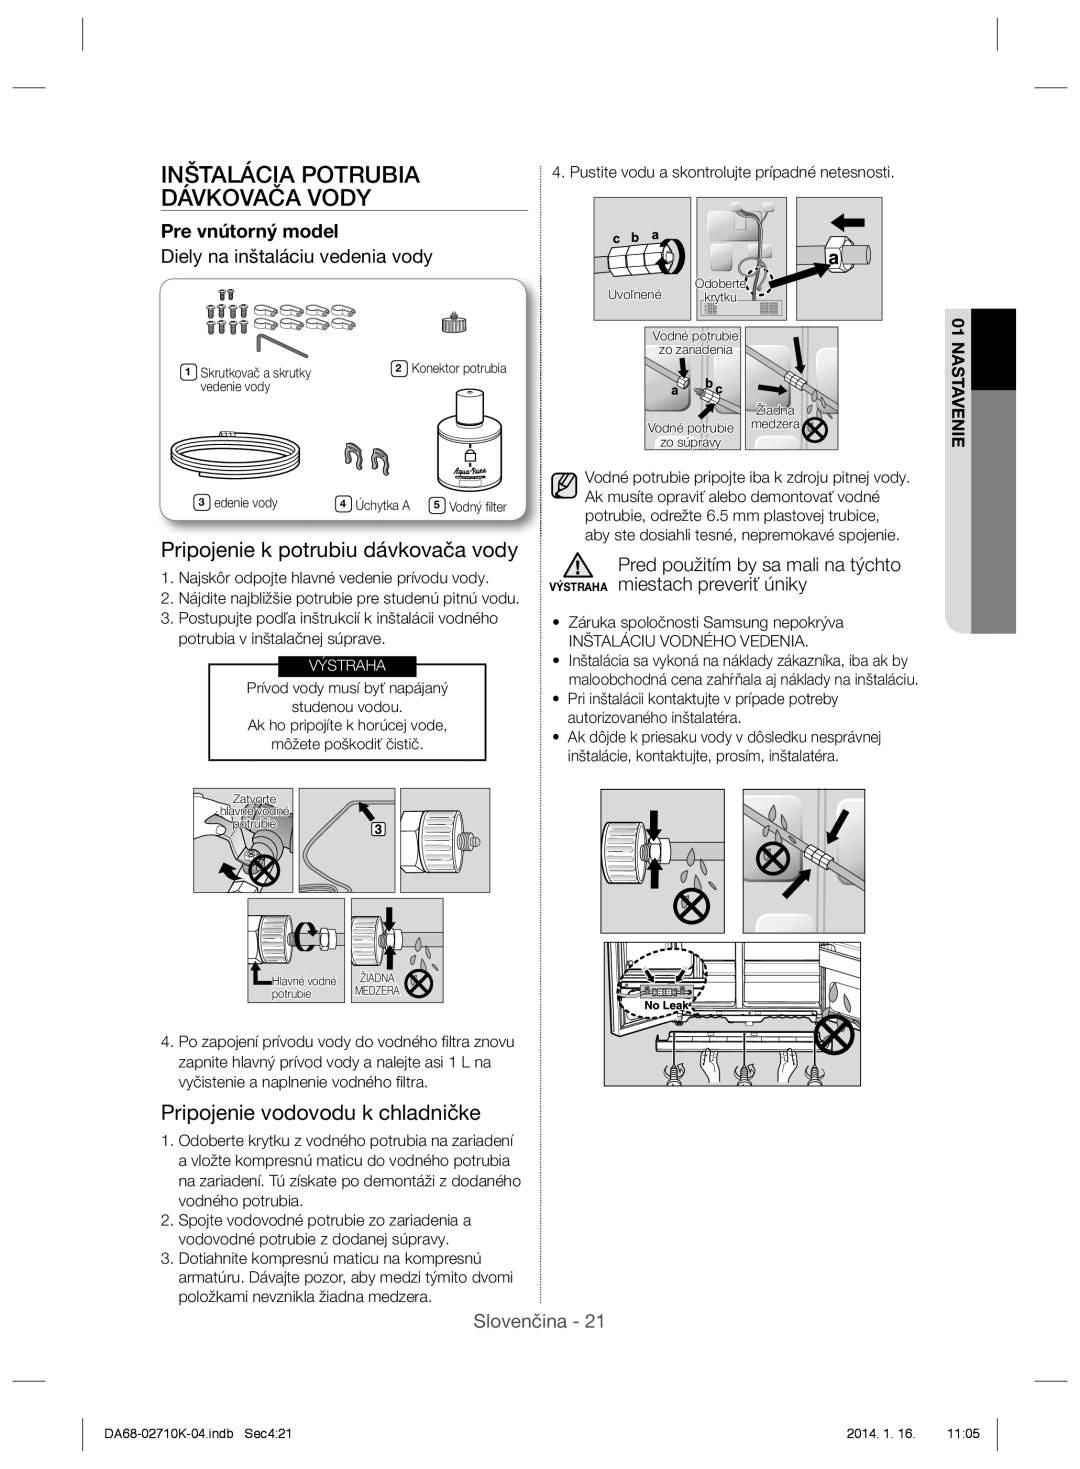 Samsung RS7577THCWW/EF manual Inštalácia Potrubia Dávkovača Vody, Pripojenie k potrubiu dávkovača vody, Pre vnútorný model 